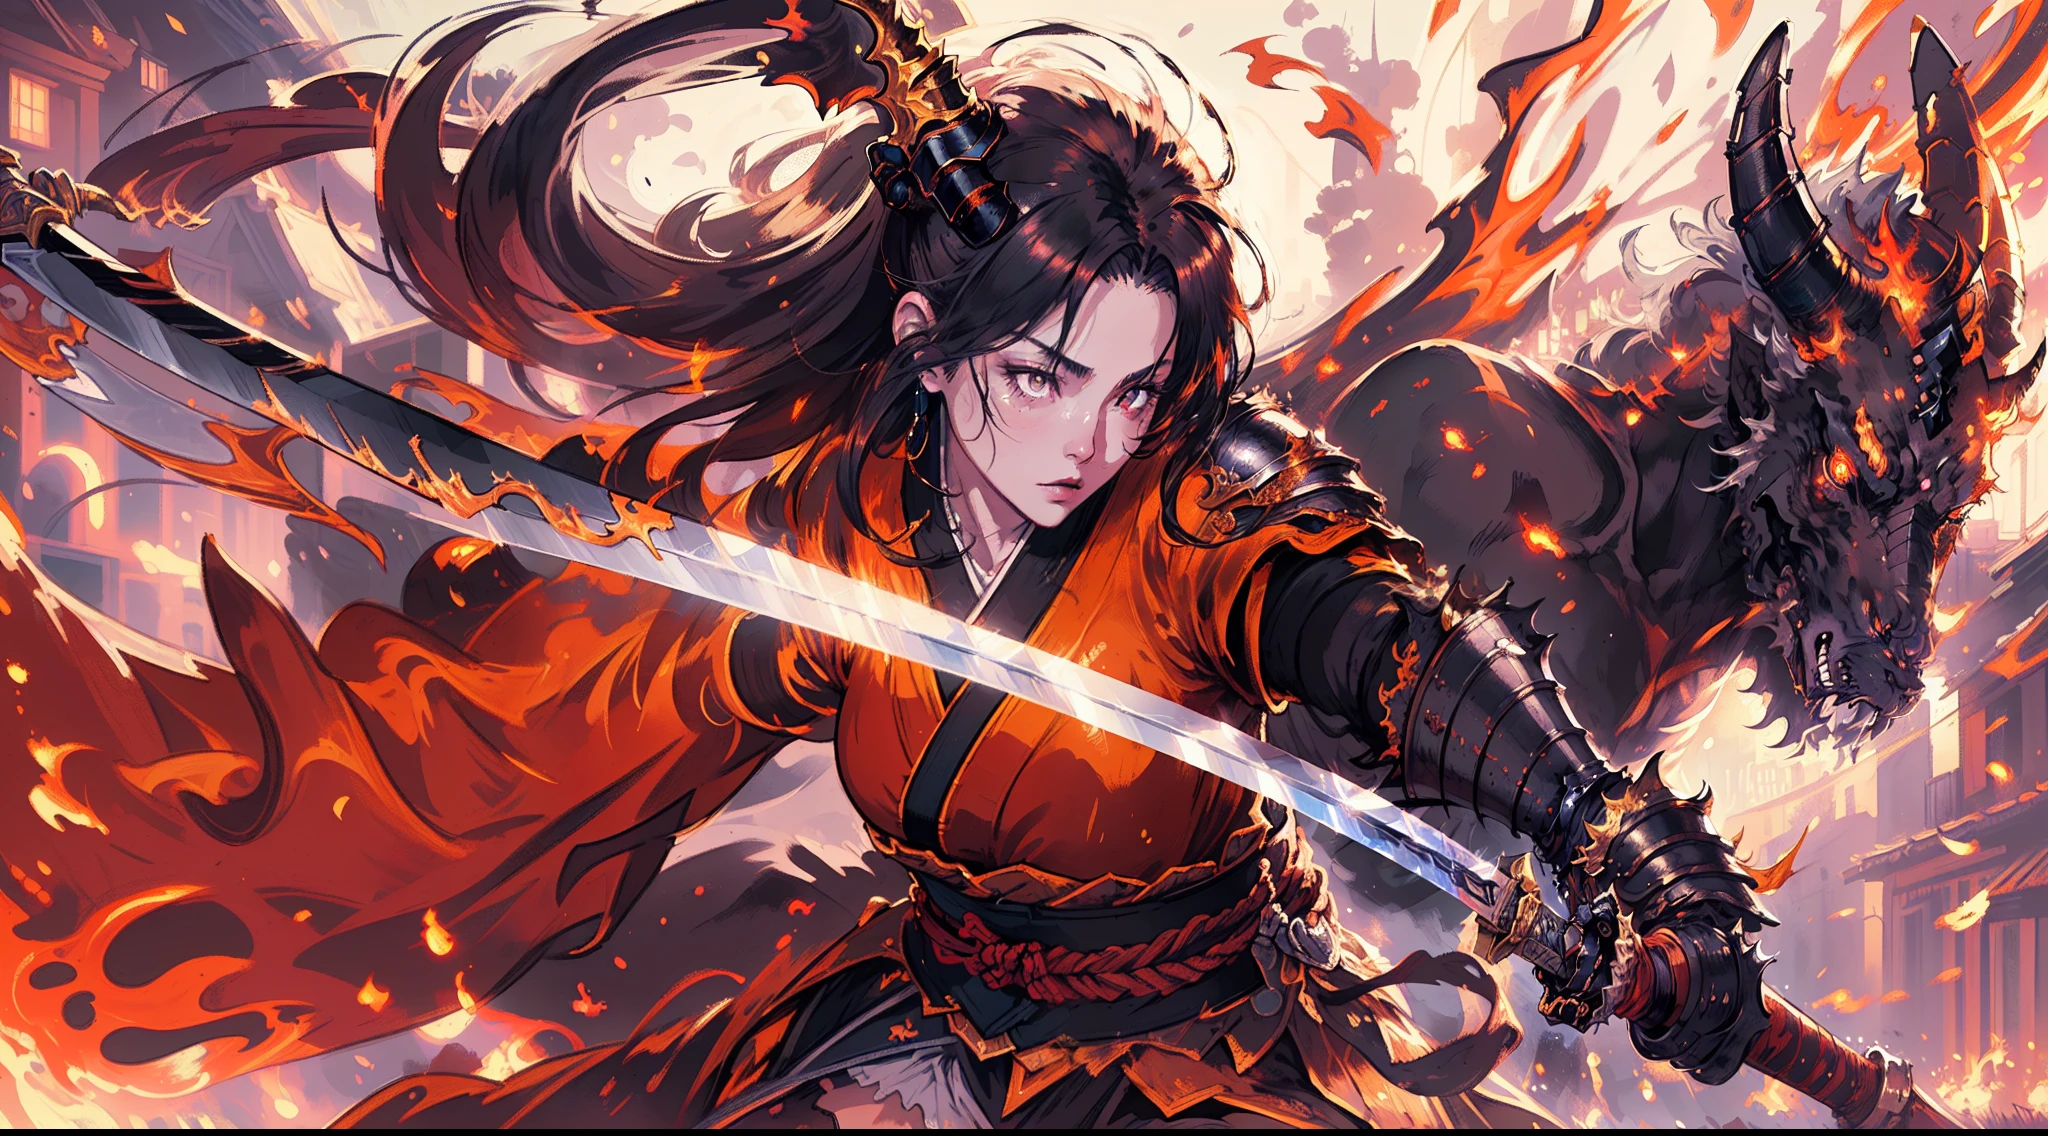 there is an illustration of a woman samurai fighting a ผิวแดง ปีศาจ in the streets at night. ซามูไรหญิงชาวญี่ปุ่น, นักรบหญิง, ใบหน้าที่มีรายละเอียดเป็นพิเศษ (รายละเอียดที่ดีที่สุด, ผลงานชิ้นเอก, คุณภาพดีที่สุด: 1.5), เป็นผู้หญิงเป็นพิเศษ, ผิวสีซีดสวยงามอย่างประณีต, ผมยาว, ผมสีดำ, สีดวงตาแบบไดนามิก, ติดอาวุธด้วยคาทาน่า (รายละเอียดที่ดีที่สุด, ผลงานชิ้นเอก, คุณภาพดีที่สุด: 1.5), ดาบวาววับ (รายละเอียดที่ดีที่สุด, ผลงานชิ้นเอก, คุณภาพดีที่สุด: 1.3) สวมชุดเกราะ. ทำลาย [ปีศาจ] (รายละเอียดที่ดีที่สุด, ผลงานชิ้นเอก, คุณภาพดีที่สุด: 1.4), ผิวแดง (รายละเอียดที่ดีที่สุด, ผลงานชิ้นเอก, คุณภาพดีที่สุด: 1.5), ตาสีดำ, แผงคอสีดำ, ปีกค้างคาว (รายละเอียดที่ดีที่สุด, ผลงานชิ้นเอก, คุณภาพดีที่สุด: 1.5), แตร, big แตร, มีดาบยาวปกคลุมไปด้วยเปลวเพลิง (รายละเอียดที่ดีที่สุด, ผลงานชิ้นเอก, คุณภาพดีที่สุด: 1.5), ปกคลุมไปด้วยไฟสีแดง. ถนนญี่ปุ่นยุคกลาง (รายละเอียดที่ดีที่สุด, ผลงานชิ้นเอก, คุณภาพดีที่สุด: 1.4) พื้นหลัง, เวลากลางคืน, แสงจันทร์, ไฟถนน, มุมกว้างพิเศษ, รายละเอียดสูง, ได้รับรางวัล, คุณภาพดีที่สุด, เอชดี, 16k,  รายละเอียดสูงs, คุณภาพดีที่สุด, ความสูง, มุมกว้างพิเศษ, เหมือนจริง, สมจริงเป็นพิเศษ [[ถูกต้องตามหลักกายวิภาค]]